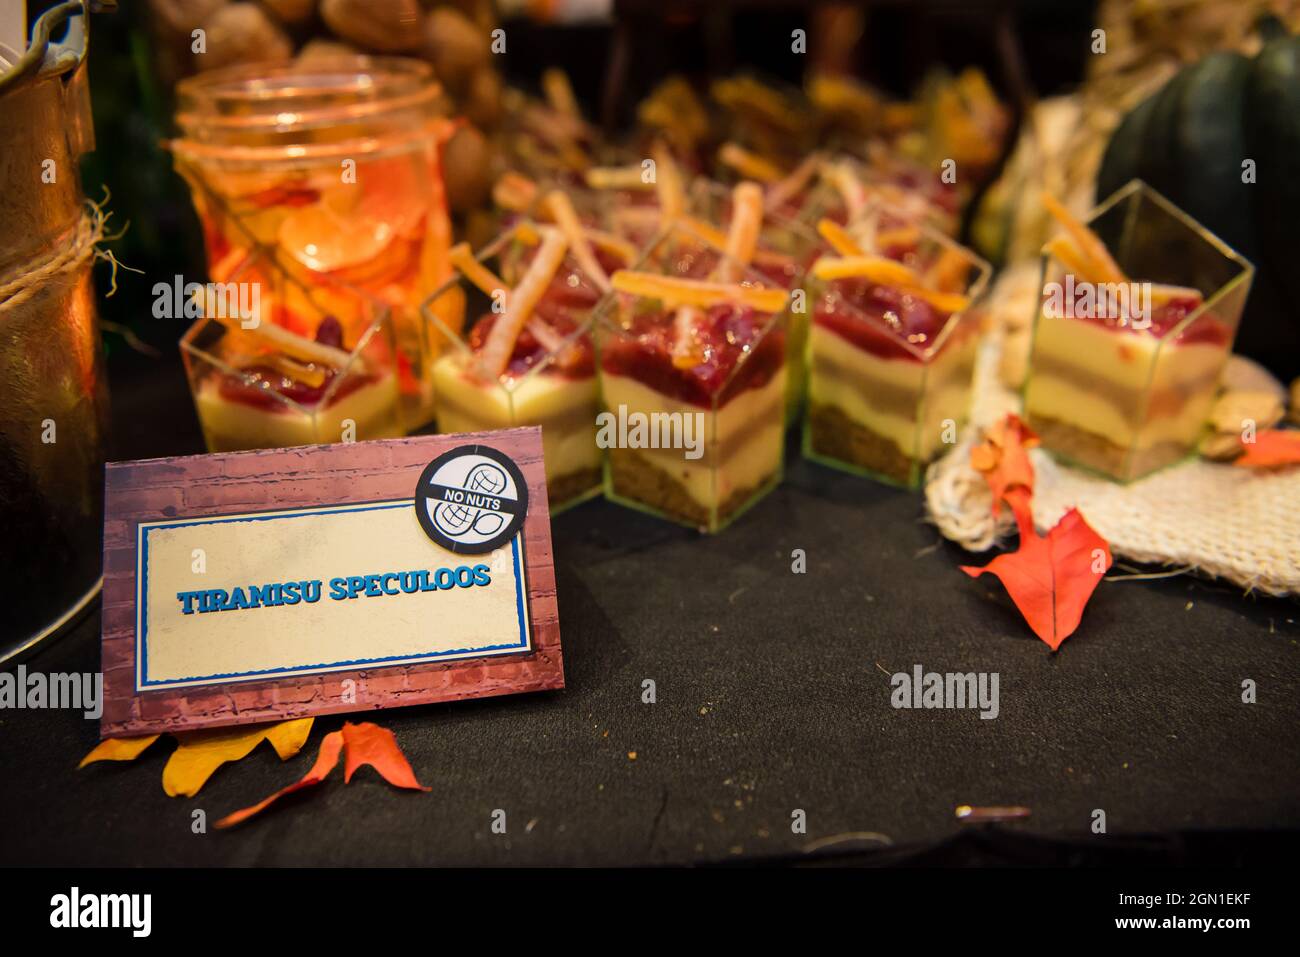 Tiramisu speculoos dessert avec garniture de fraise. La nourriture est plutôt bonne Banque D'Images